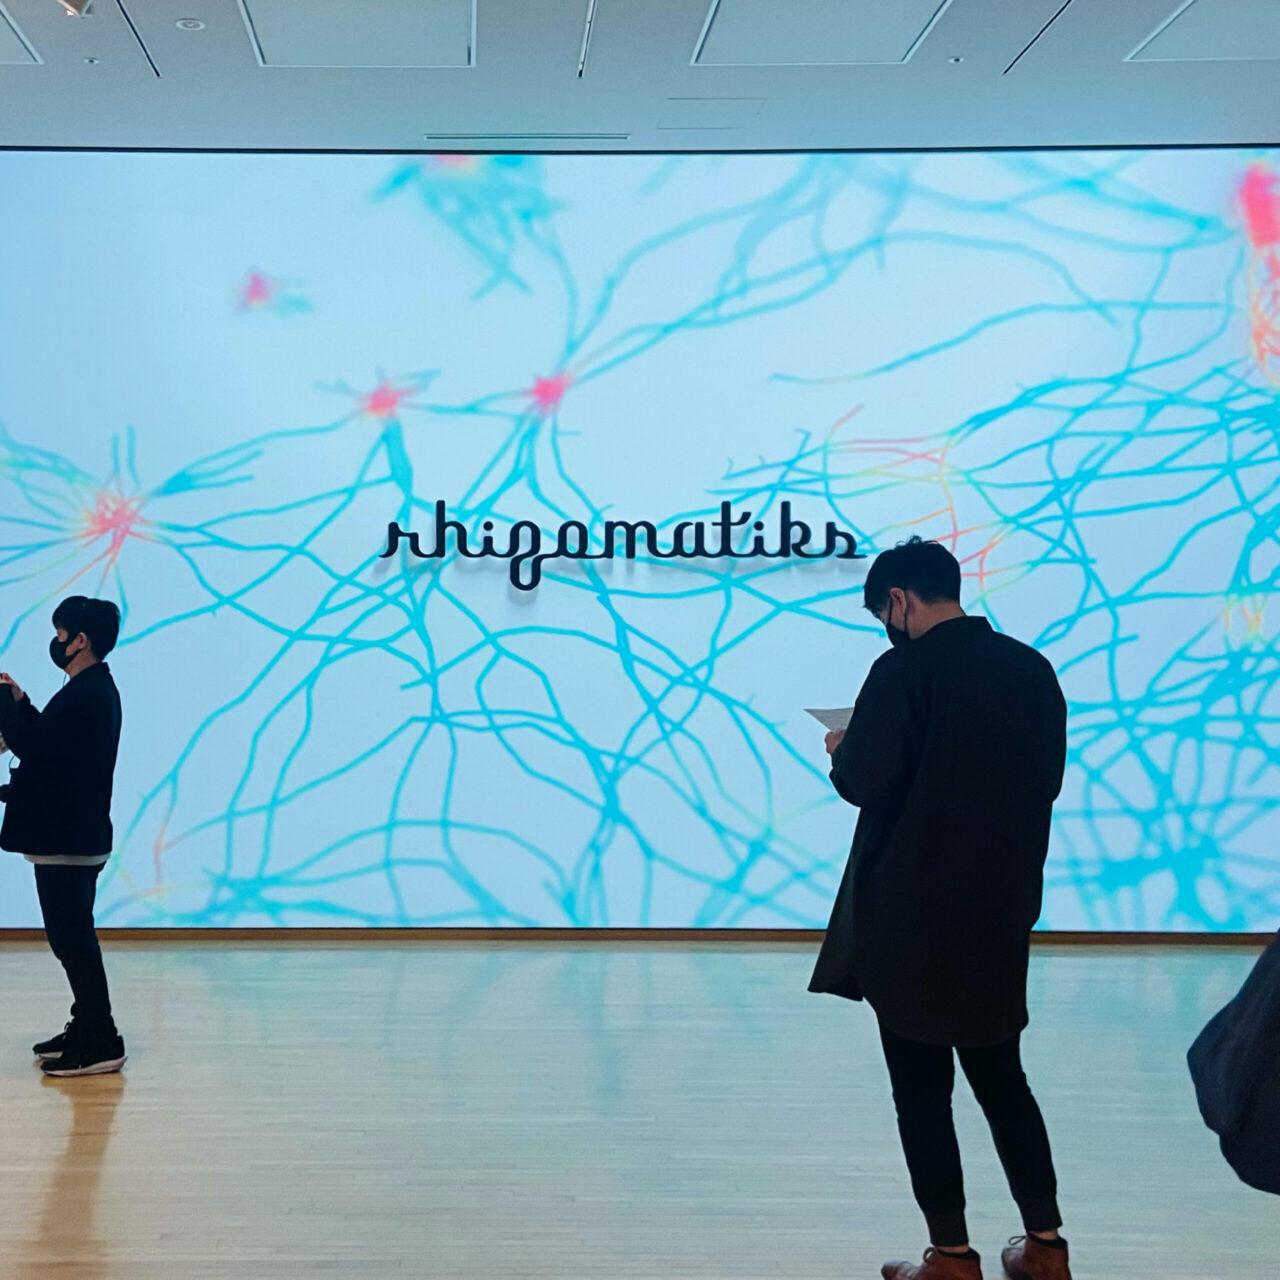 ジャパンのすごさの現在地！注目のライゾマ展で紐解くデジタルアートと未来